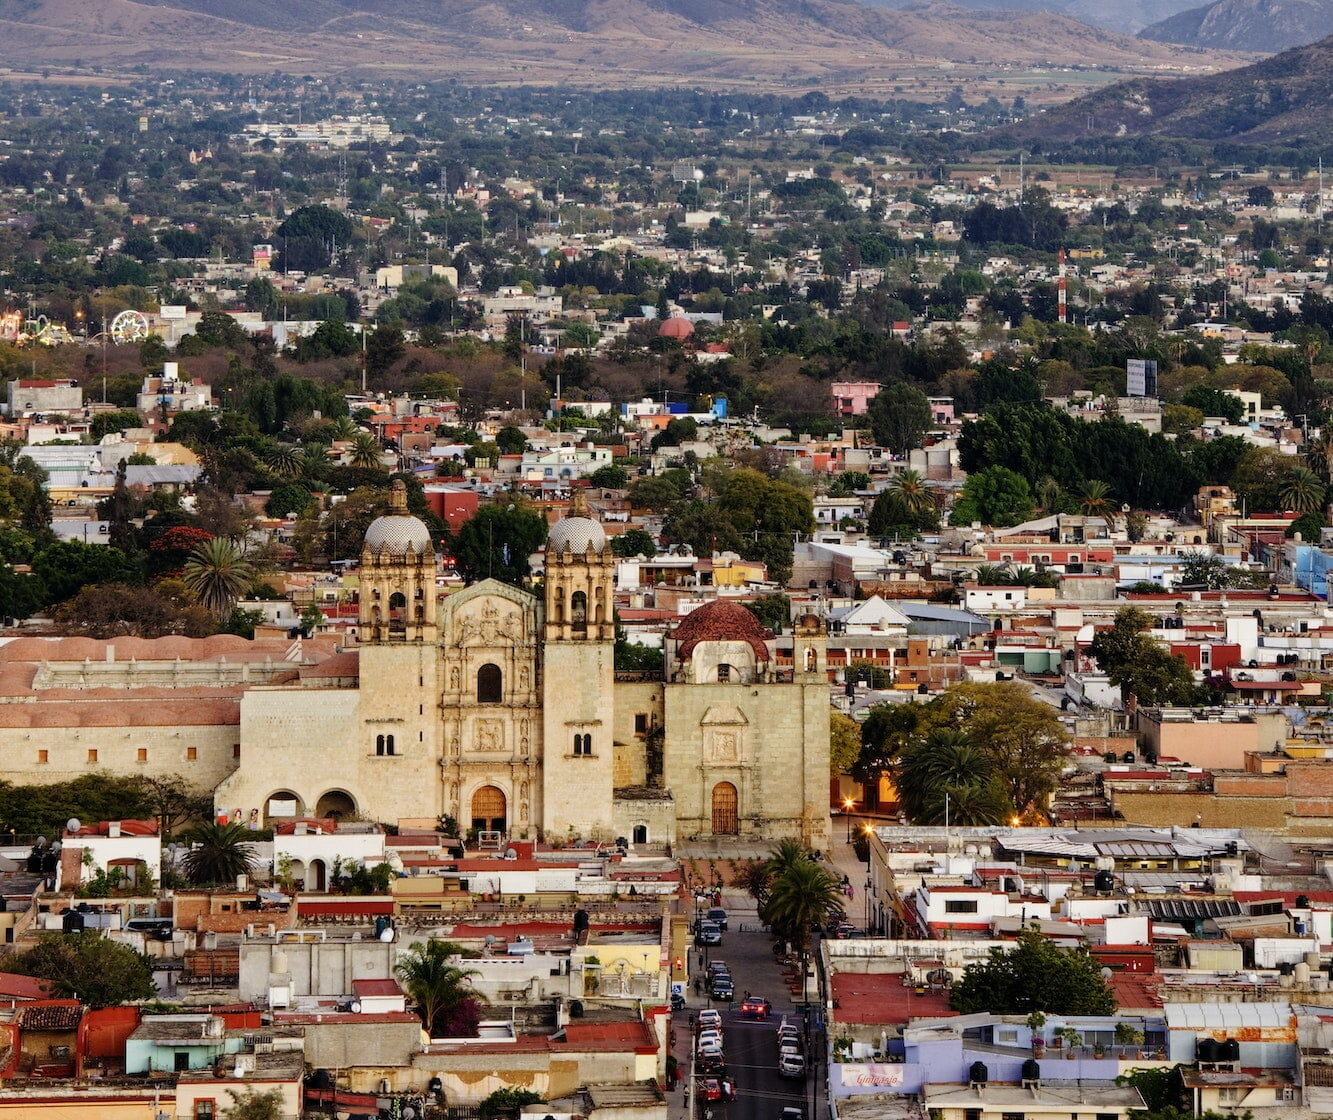 Cityscape of Oaxaca